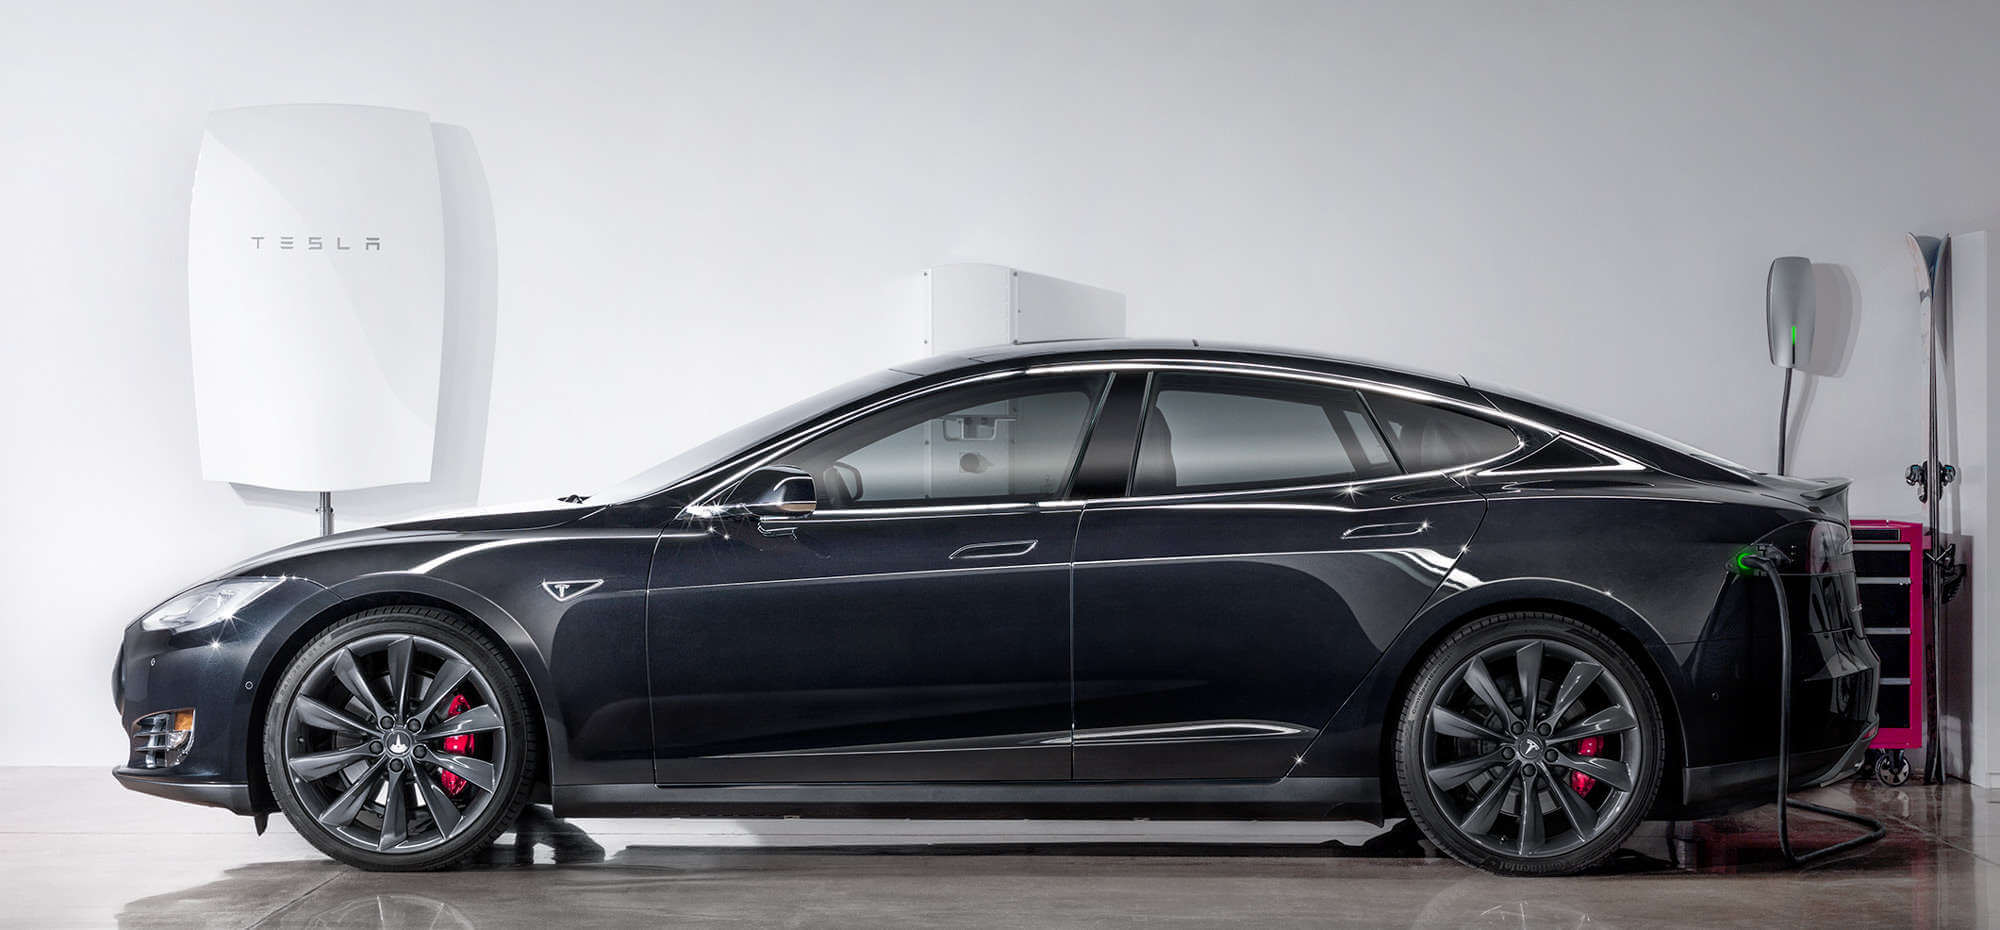 Powerwall: Tesla stellt eine Batterie für Zuhause vor 1